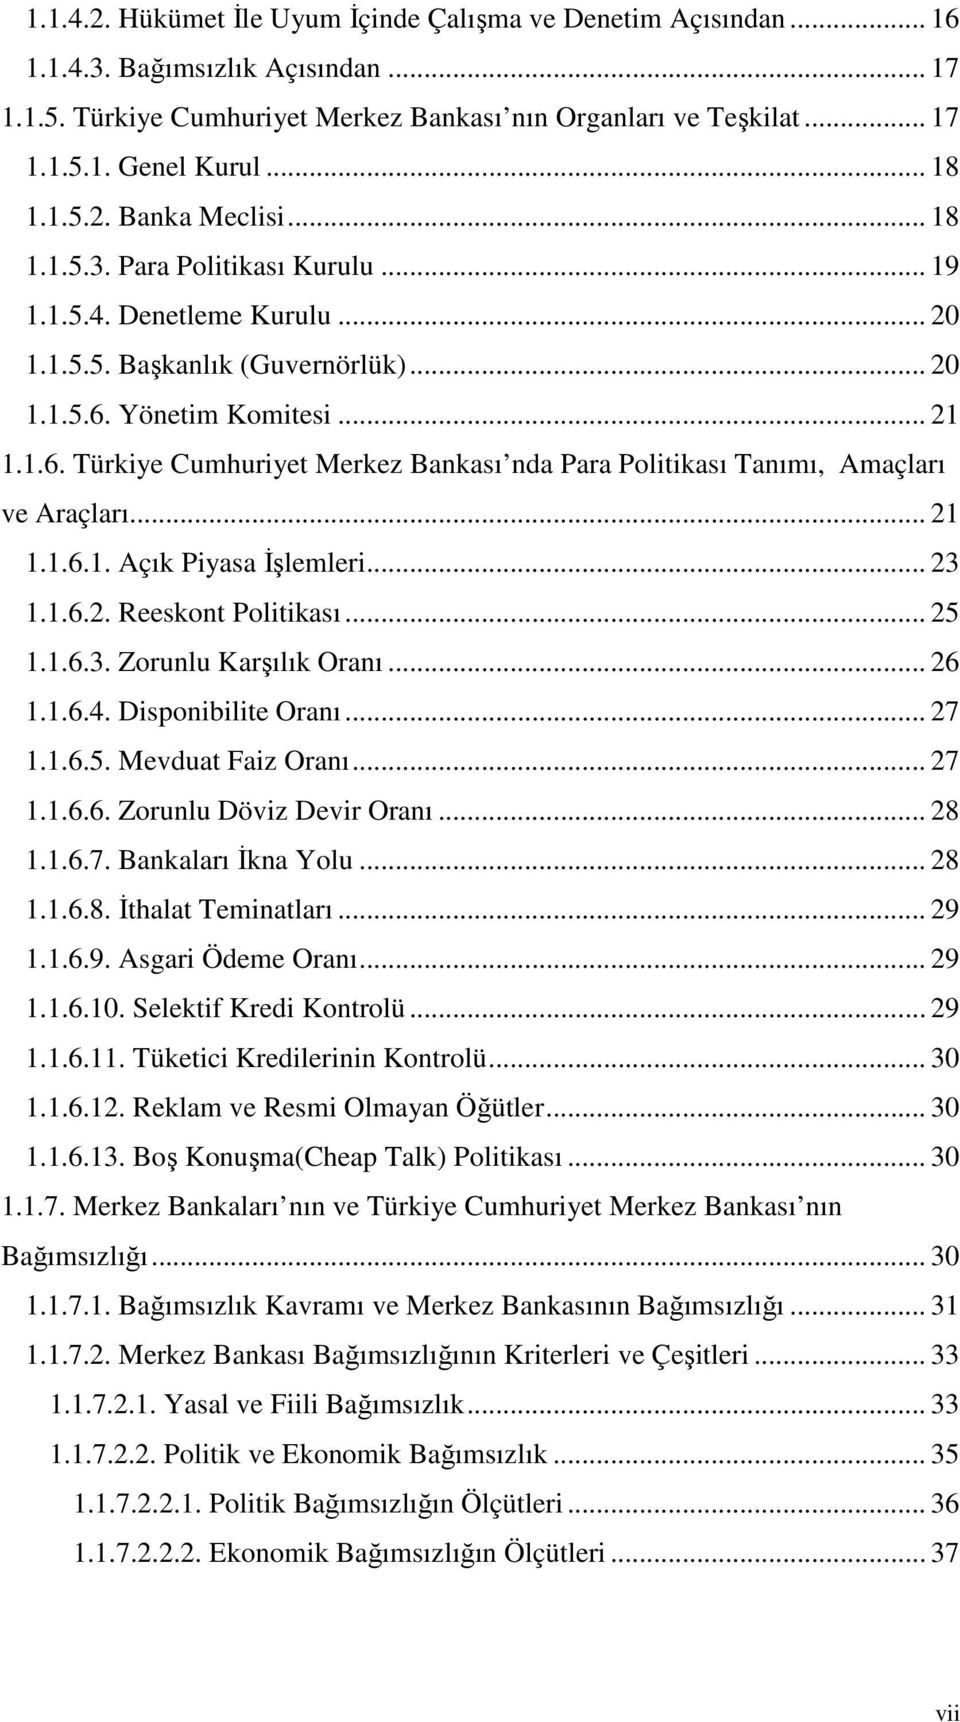 Yönetim Komitesi... 21 1.1.6. Türkiye Cumhuriyet Merkez Bankası nda Para Politikası Tanımı, Amaçları ve Araçları... 21 1.1.6.1. Açık Piyasa İşlemleri... 23 1.1.6.2. Reeskont Politikası... 25 1.1.6.3. Zorunlu Karşılık Oranı.